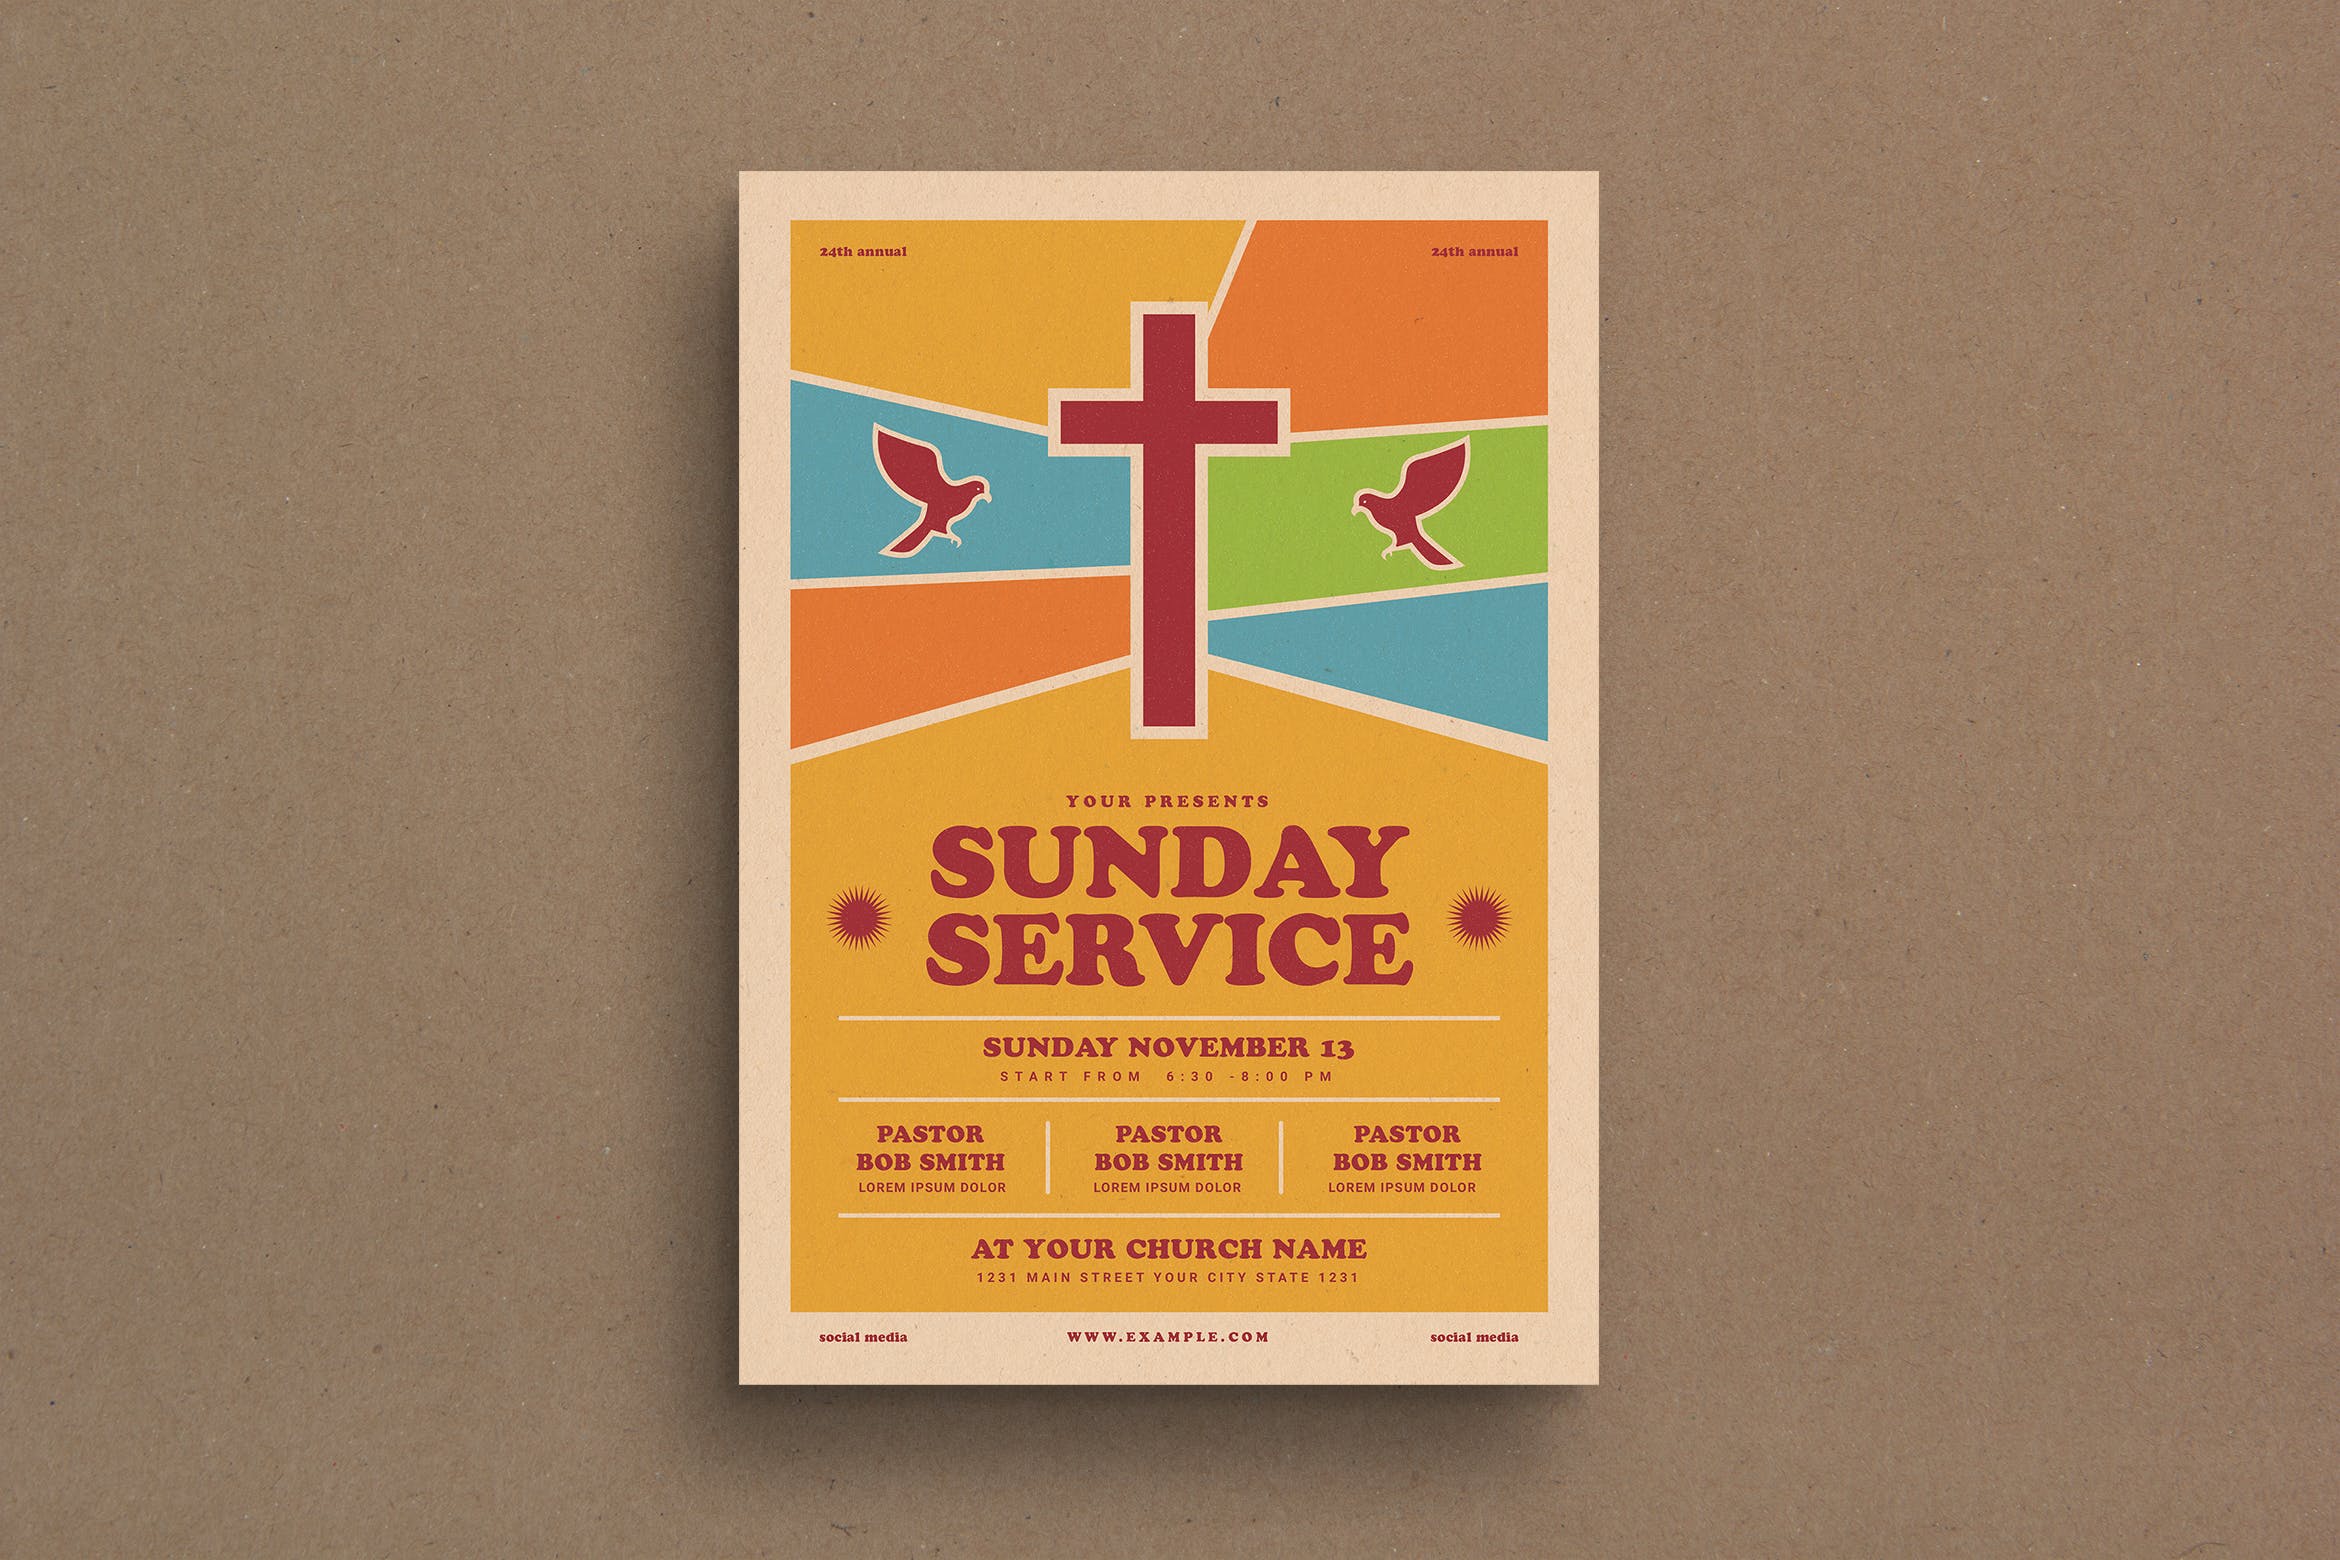 教堂礼拜日宣传海报设计模板 Sunday Service Event Flyer插图